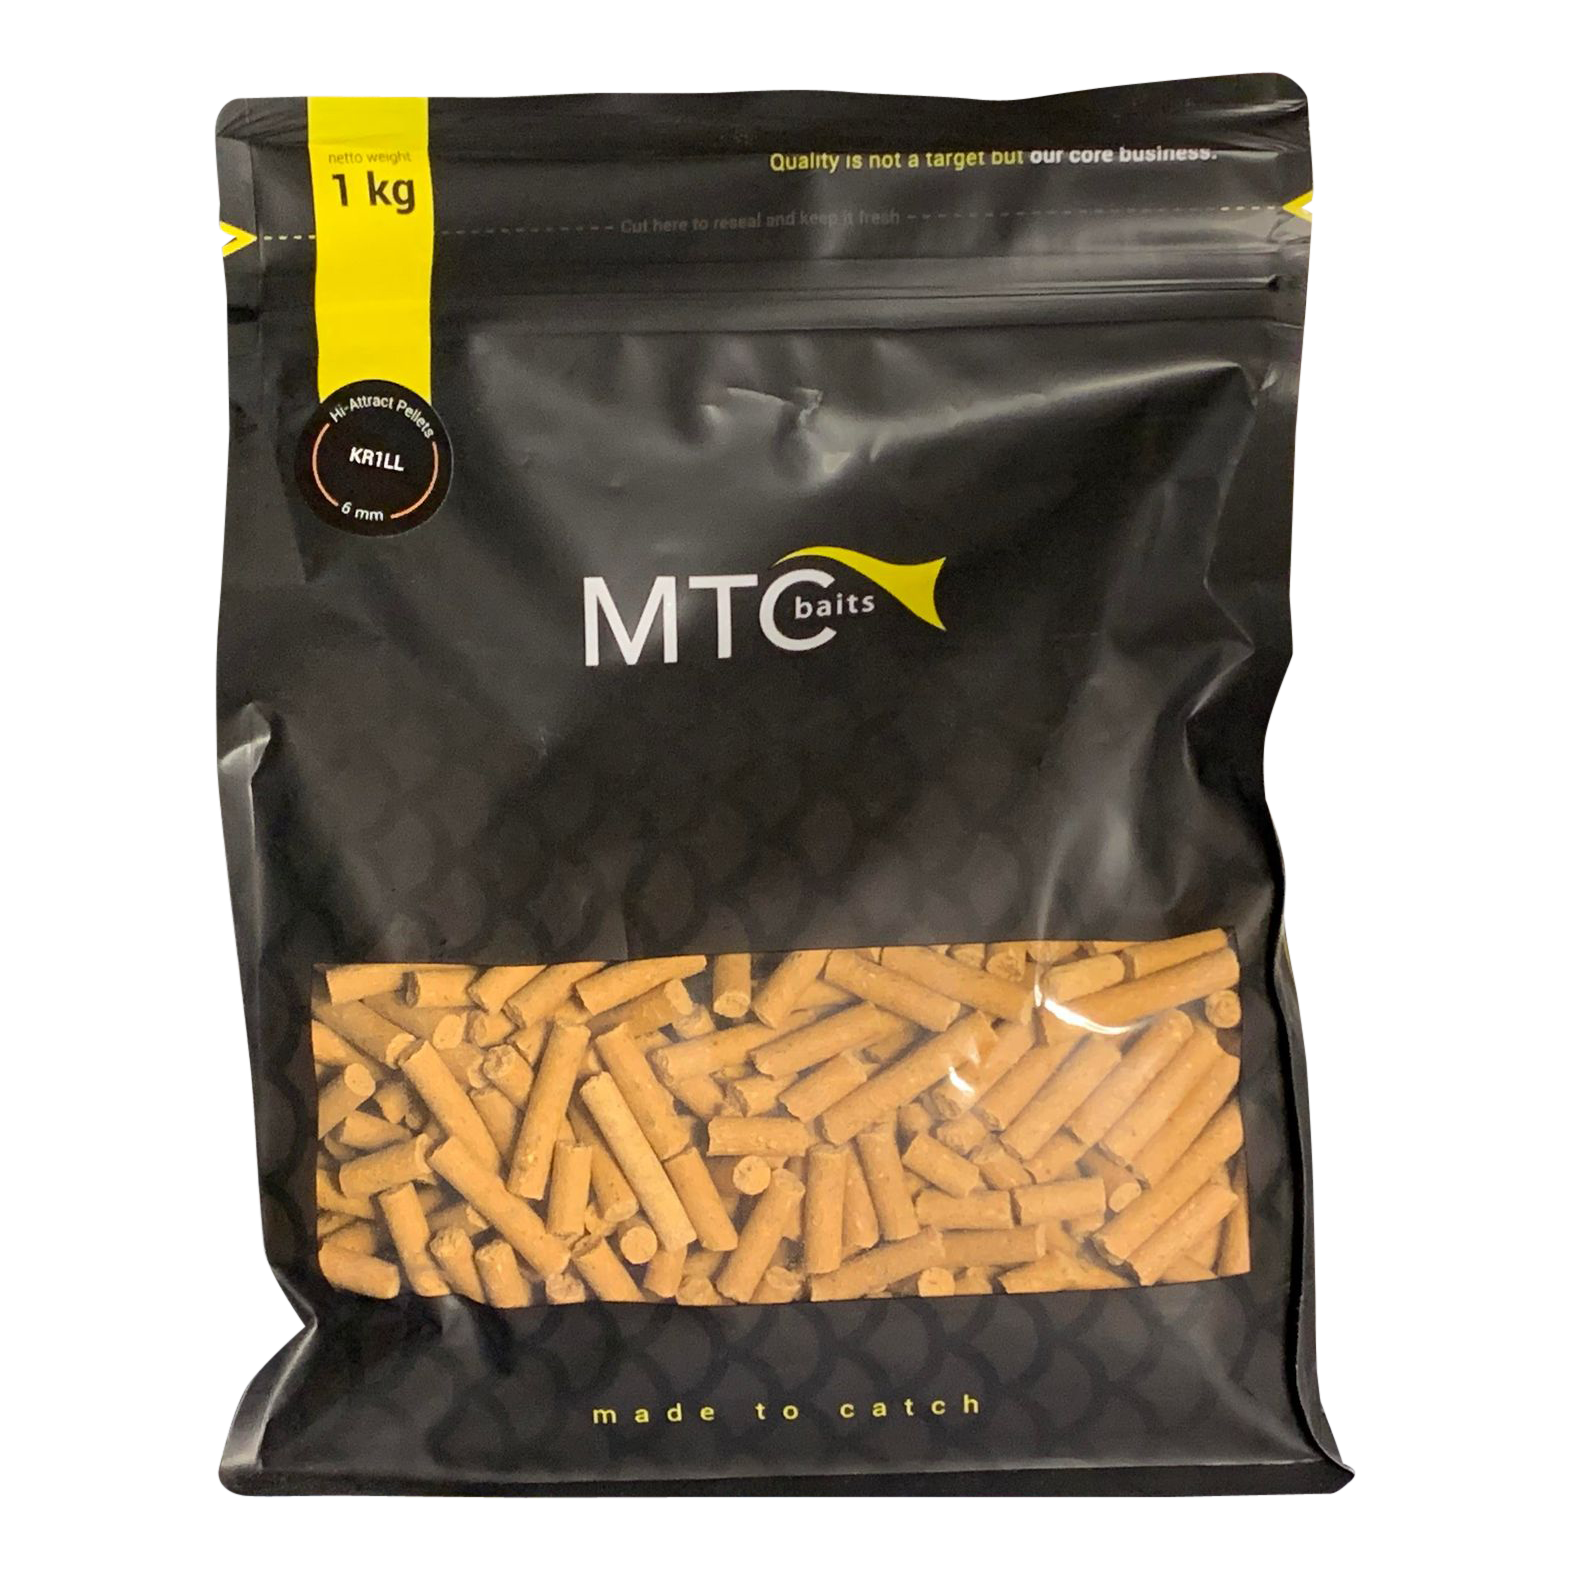 MTC Baits Hi-Attract Pellet KR1LL 1kg